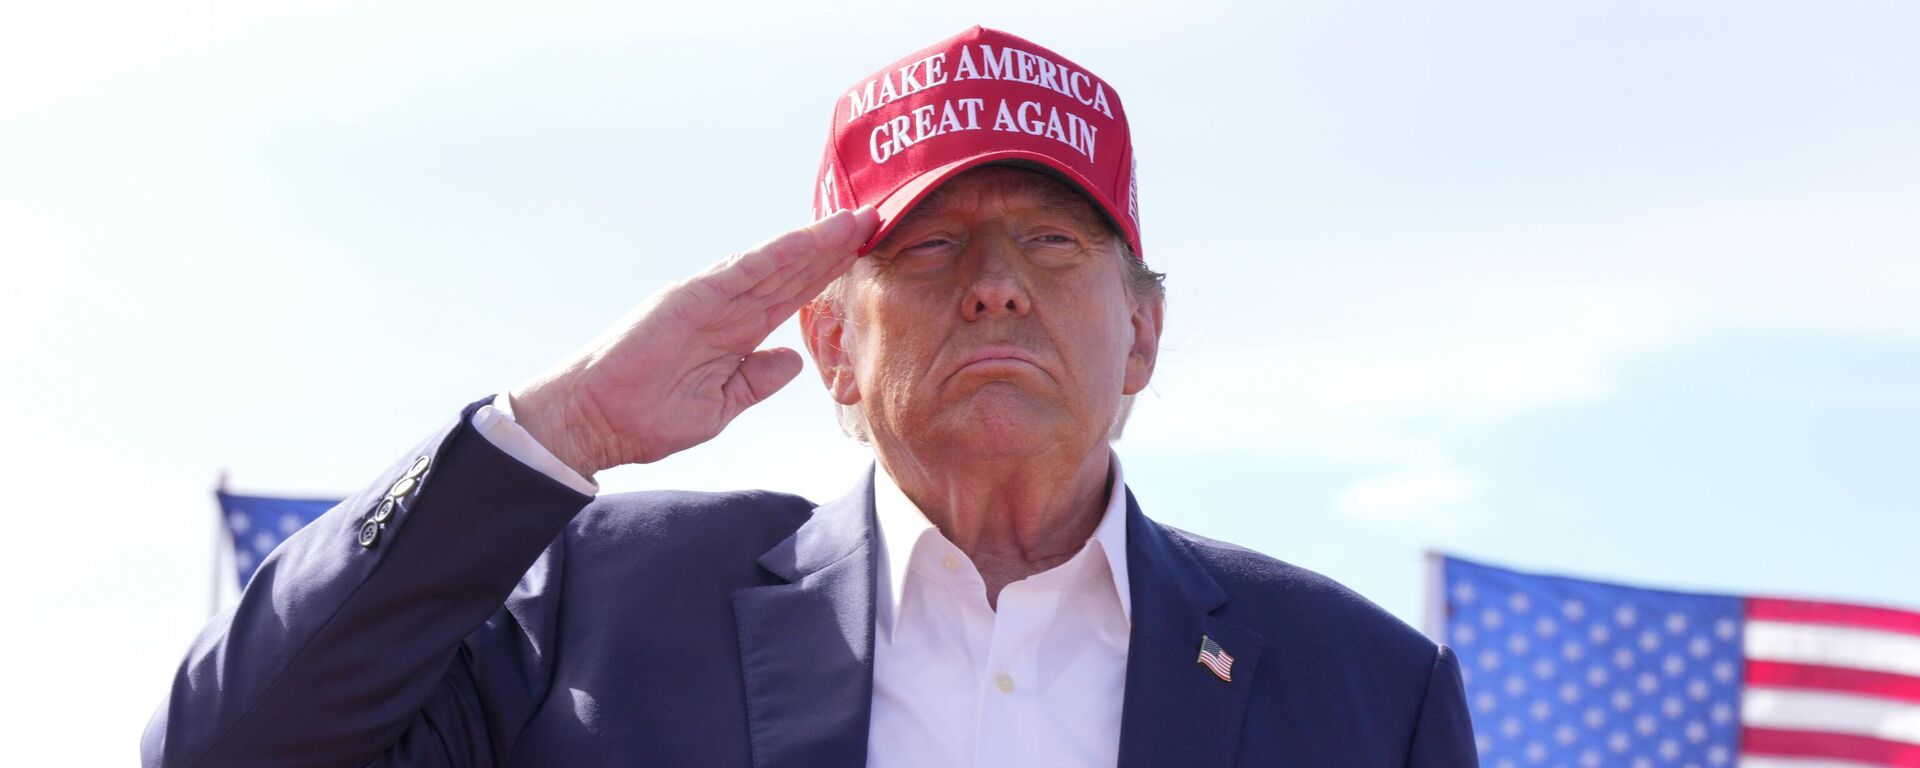 Donald Trump, candidato presidencial republicano y expresidente, saluda durante un acto de campaña el 16 de marzo de 2024, en Vandalia, Ohio - Sputnik Mundo, 1920, 21.03.2024